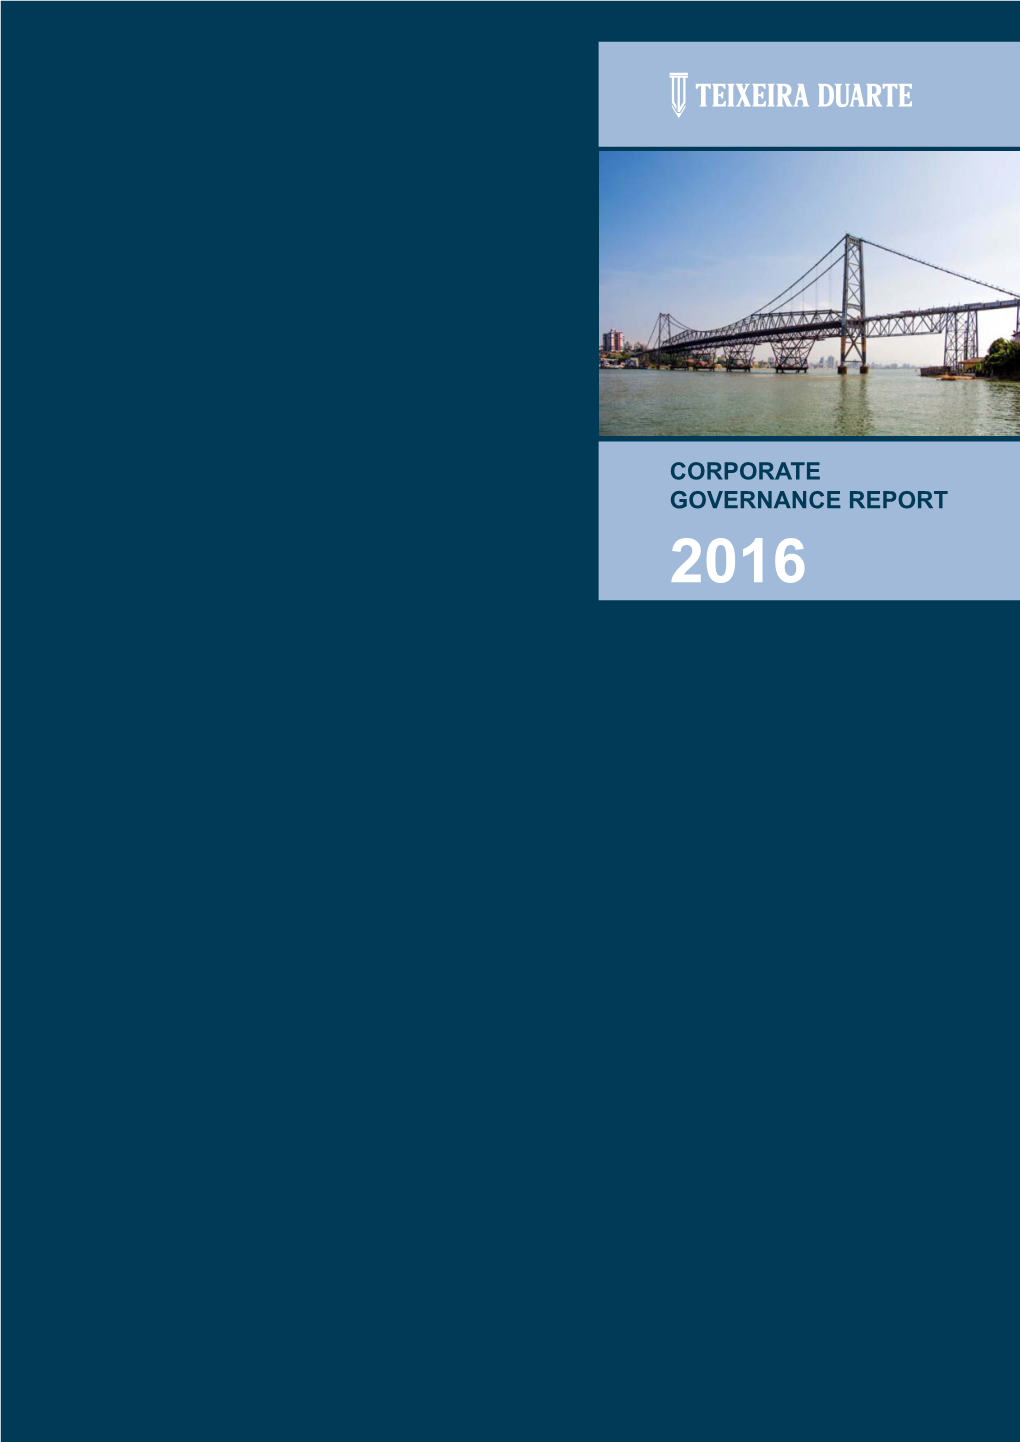 CORPORATE GOVERNANCE REPORT 2016 Cover: Hercílio Luz Bridge | Florianópolis | Brazil Corporate Governance Report 2016 Corporate Governance Report 2016